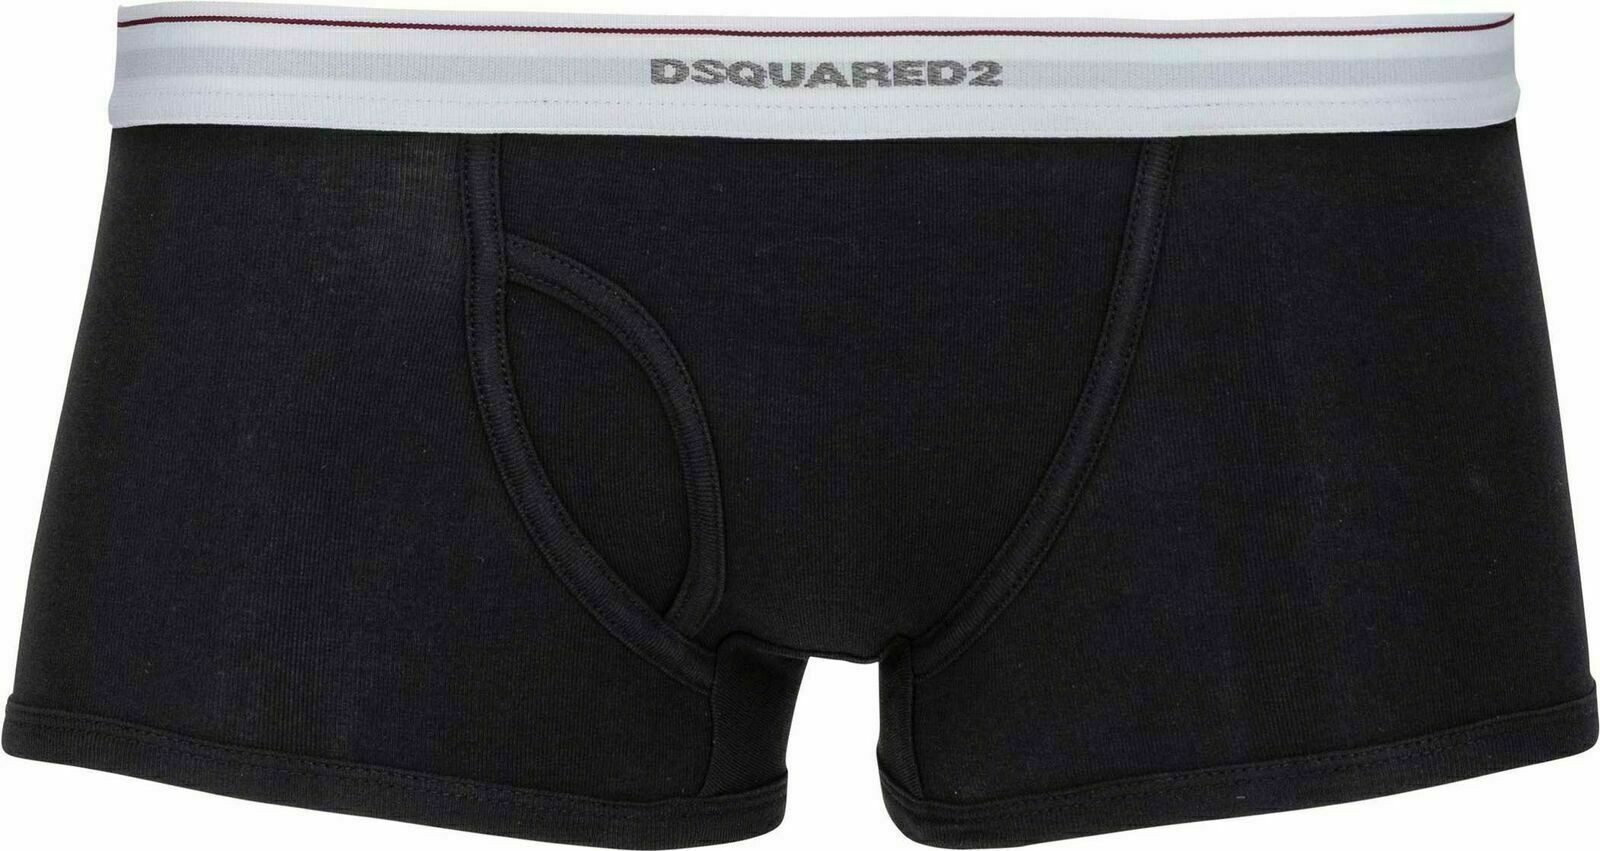 Dsquared2 Боксерские мужские трусы, боксерки Dsquared² Underwear Stretch Rib Cotton Unterwäsche Boxer Briefs Boxers